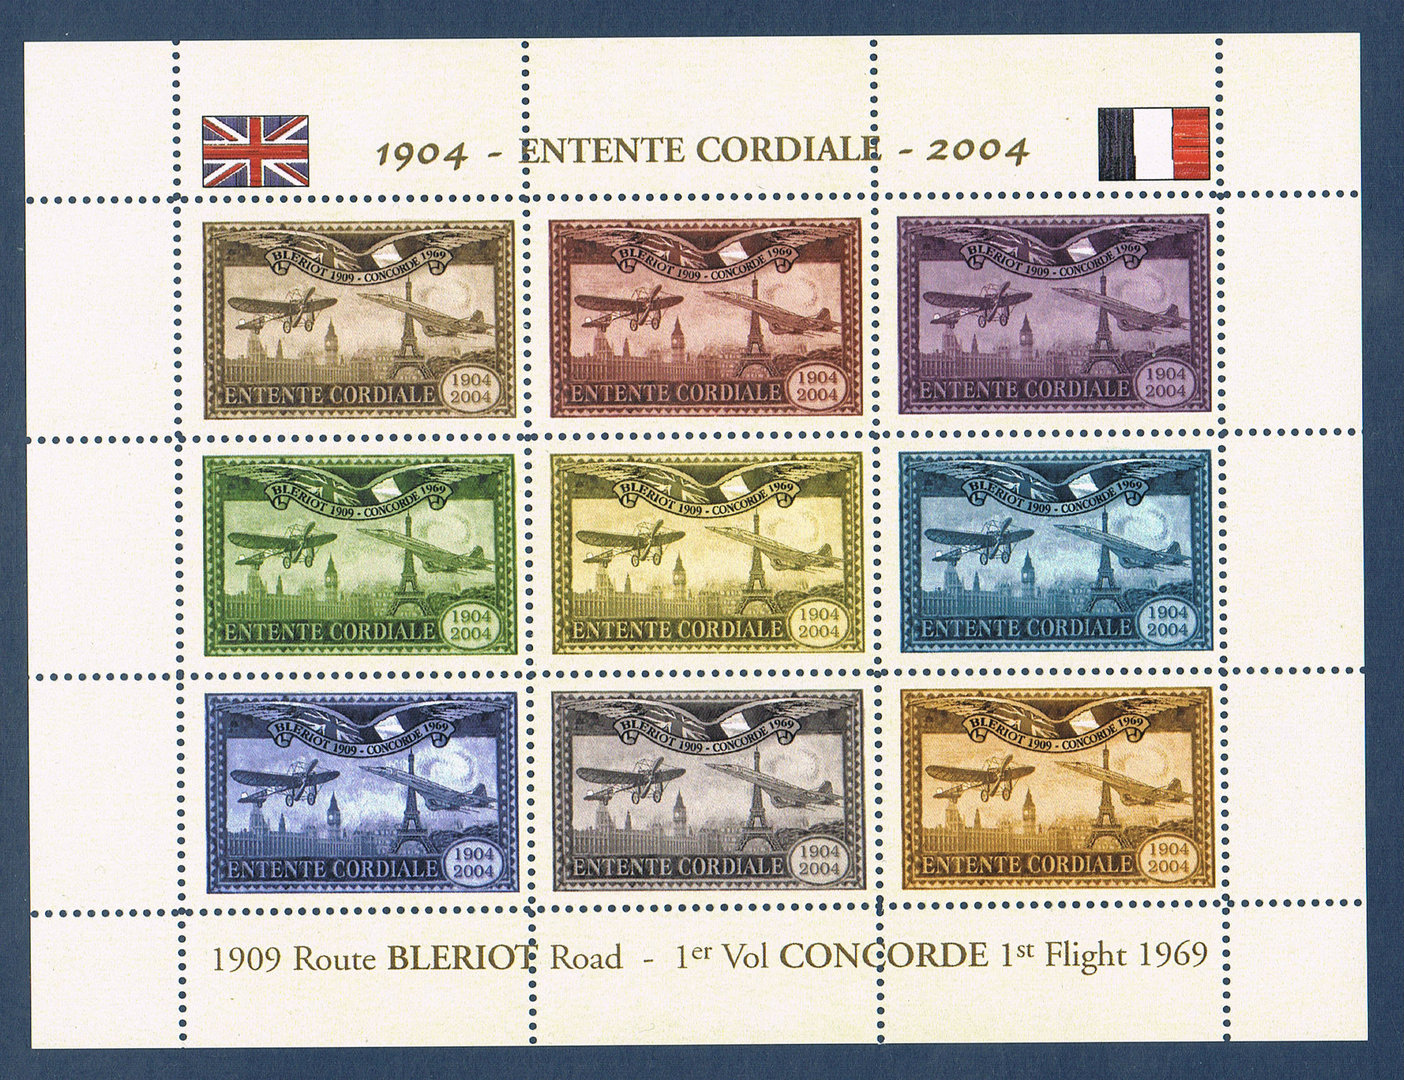 EC04-1V2 9 VIGNETTES AÉRIENNES Entente Cordiale France UK 1904-2004 CONCORDE 